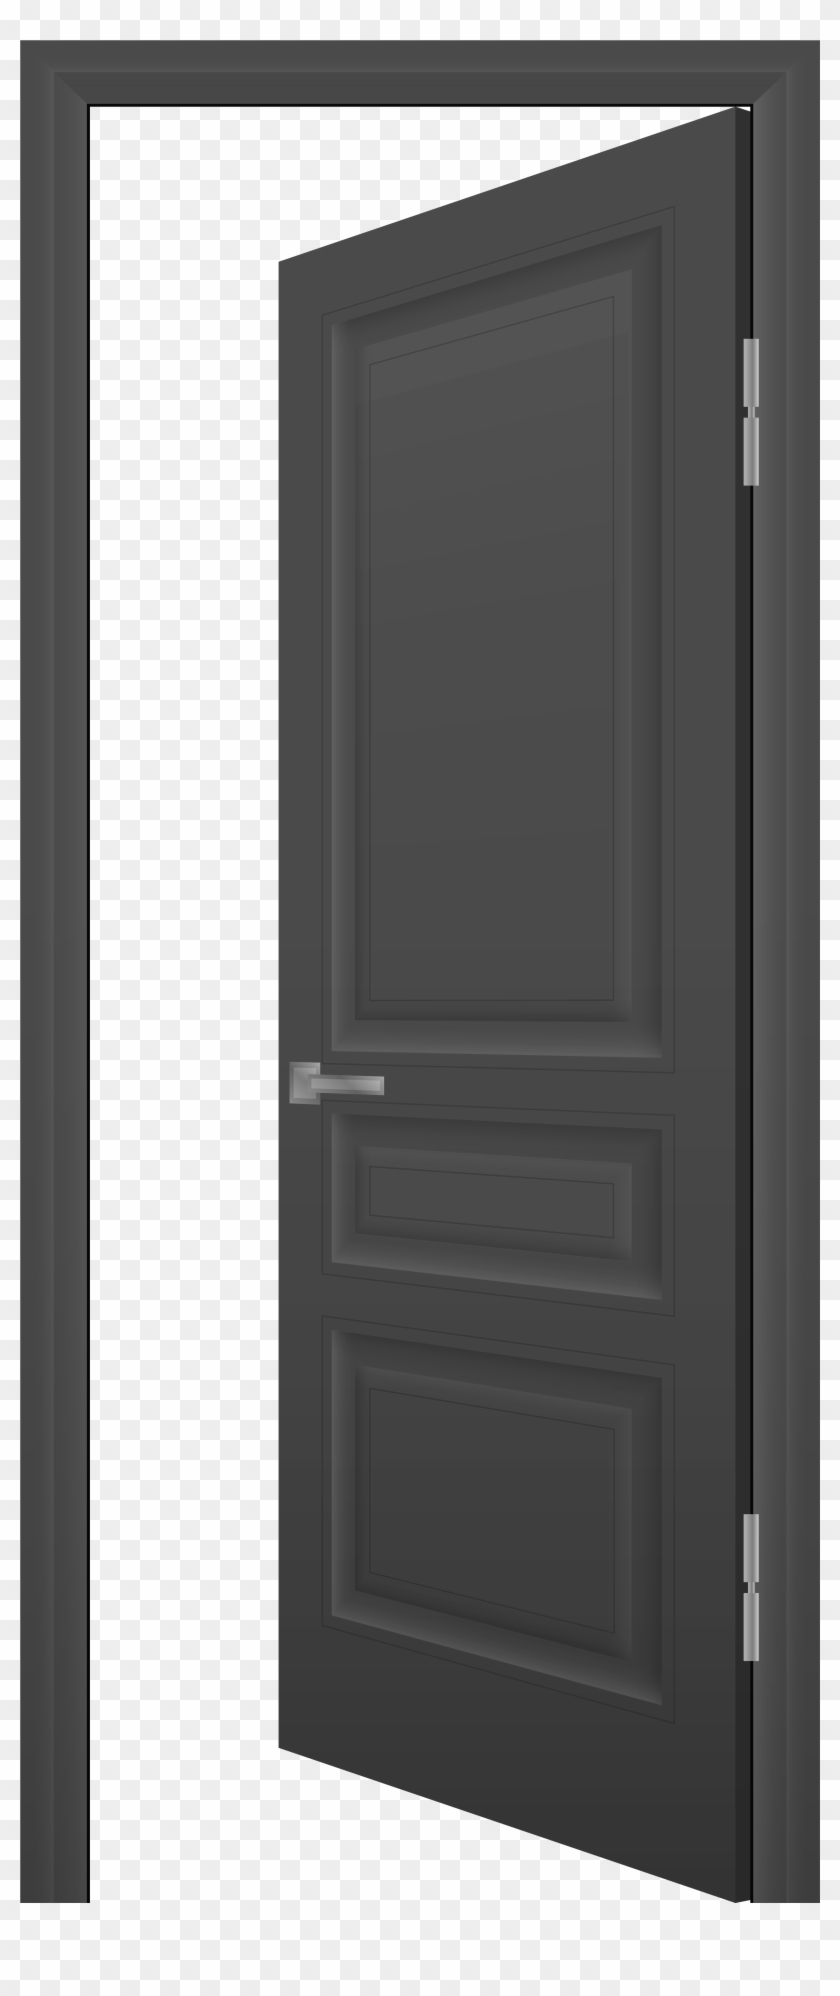 Open Door Clipart Black And White Open Door Png & Open - Door Clipart Transparent Background #713219